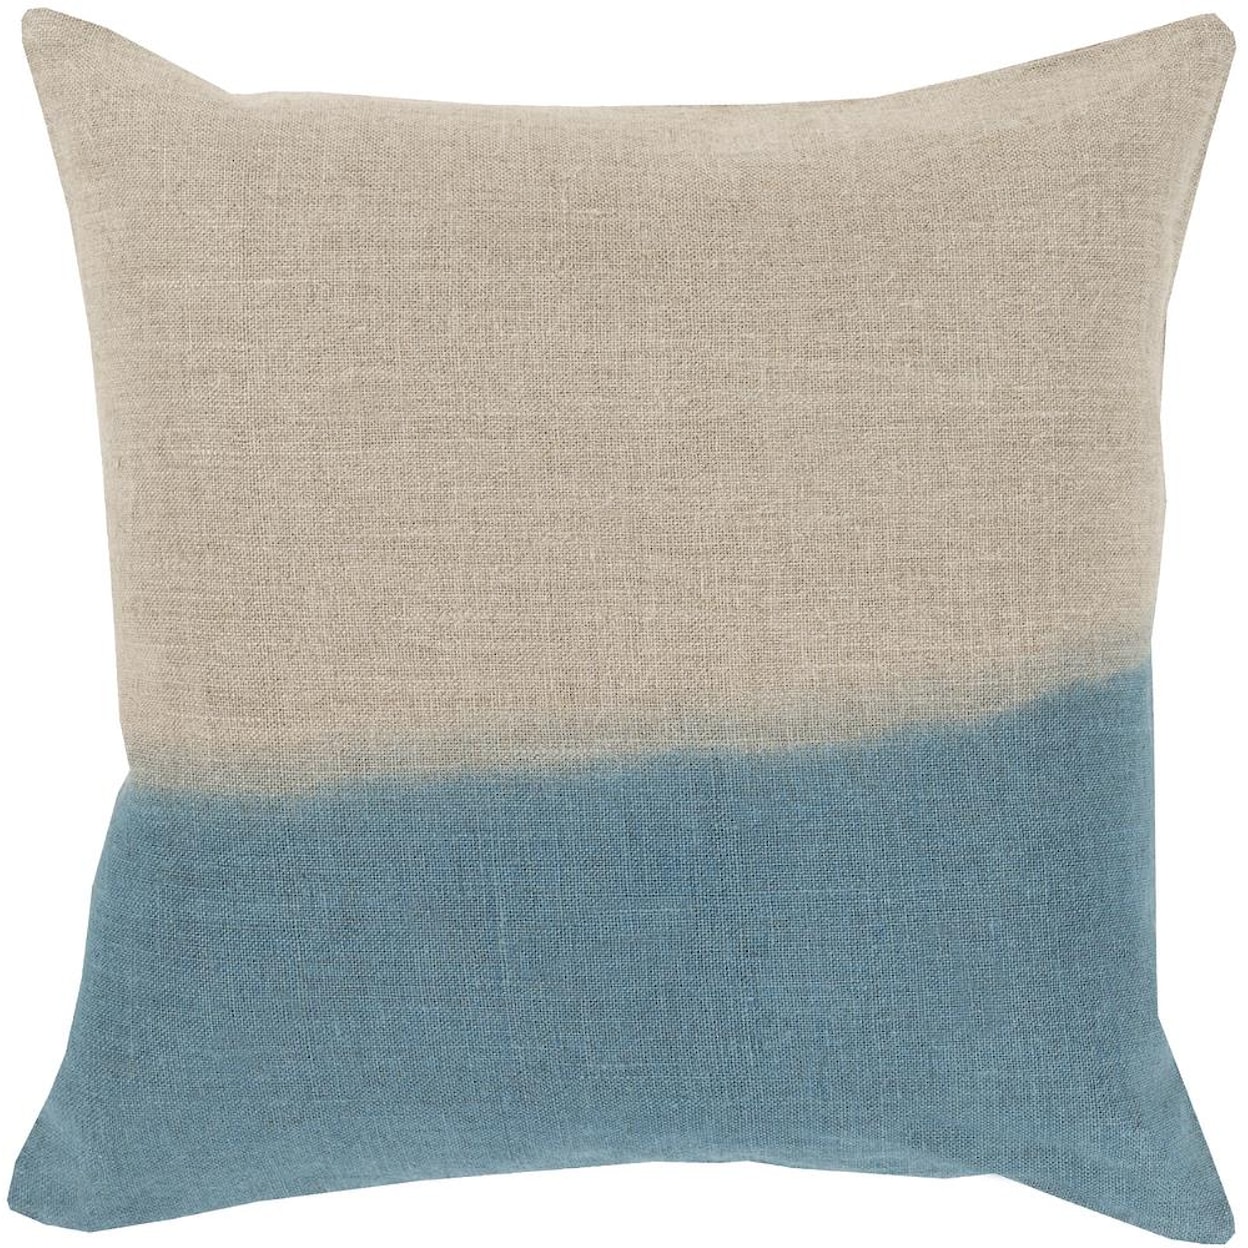 Surya Pillows 20" x 20" Dip Dyed Pillow